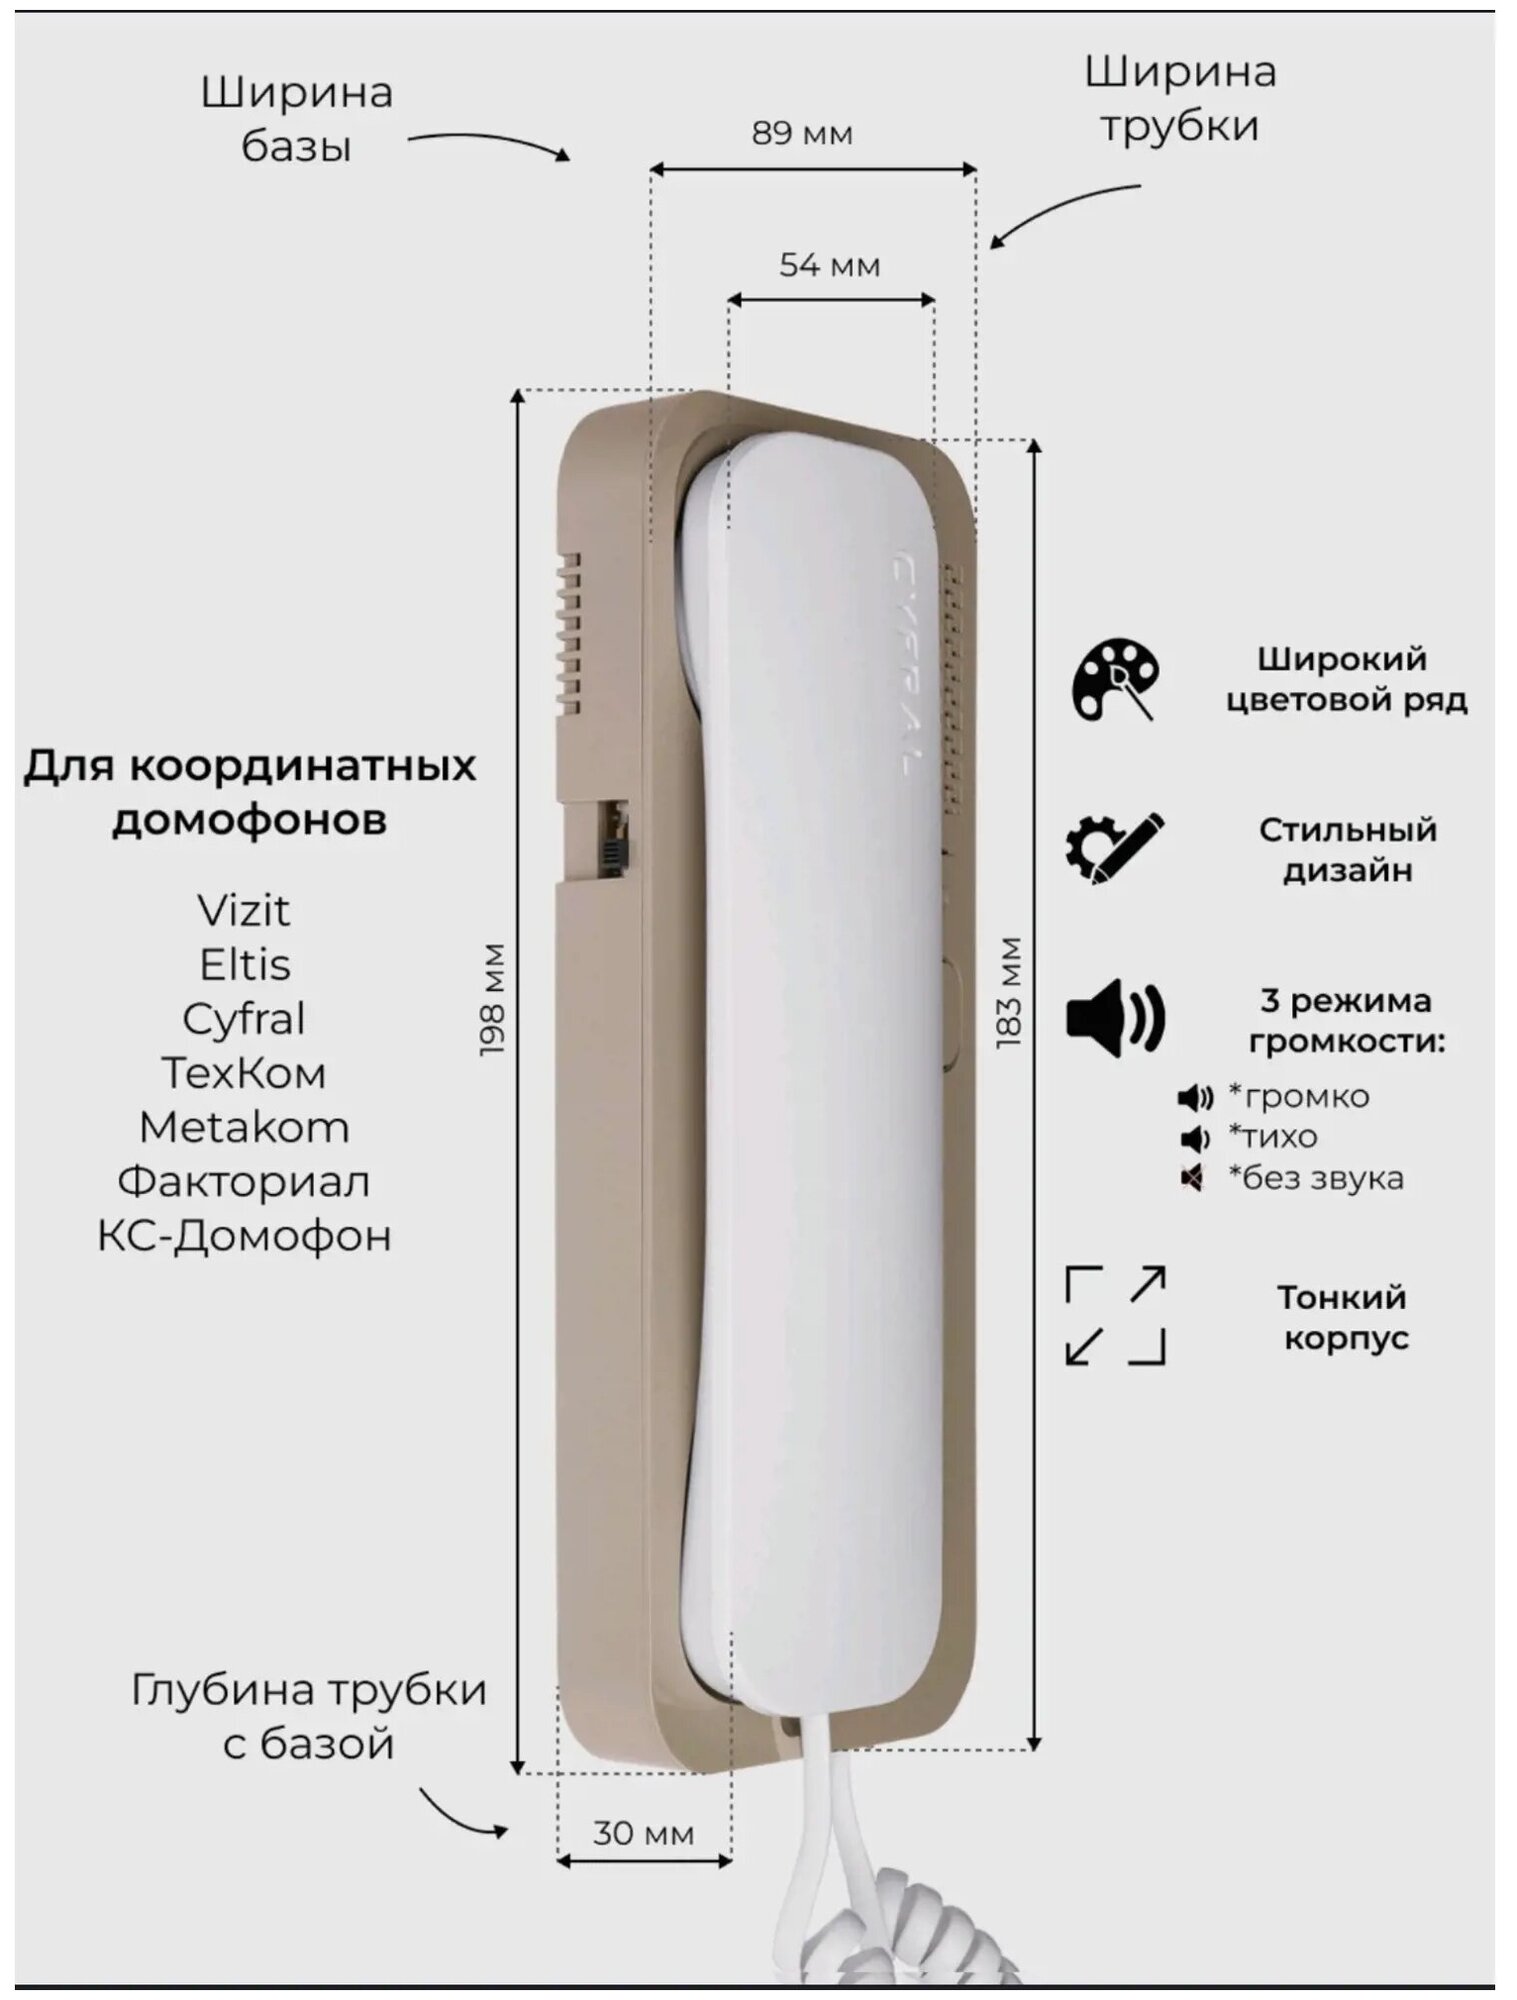 Трубка домофона Cyfral Unifon Smart U цвет бело-бежевый